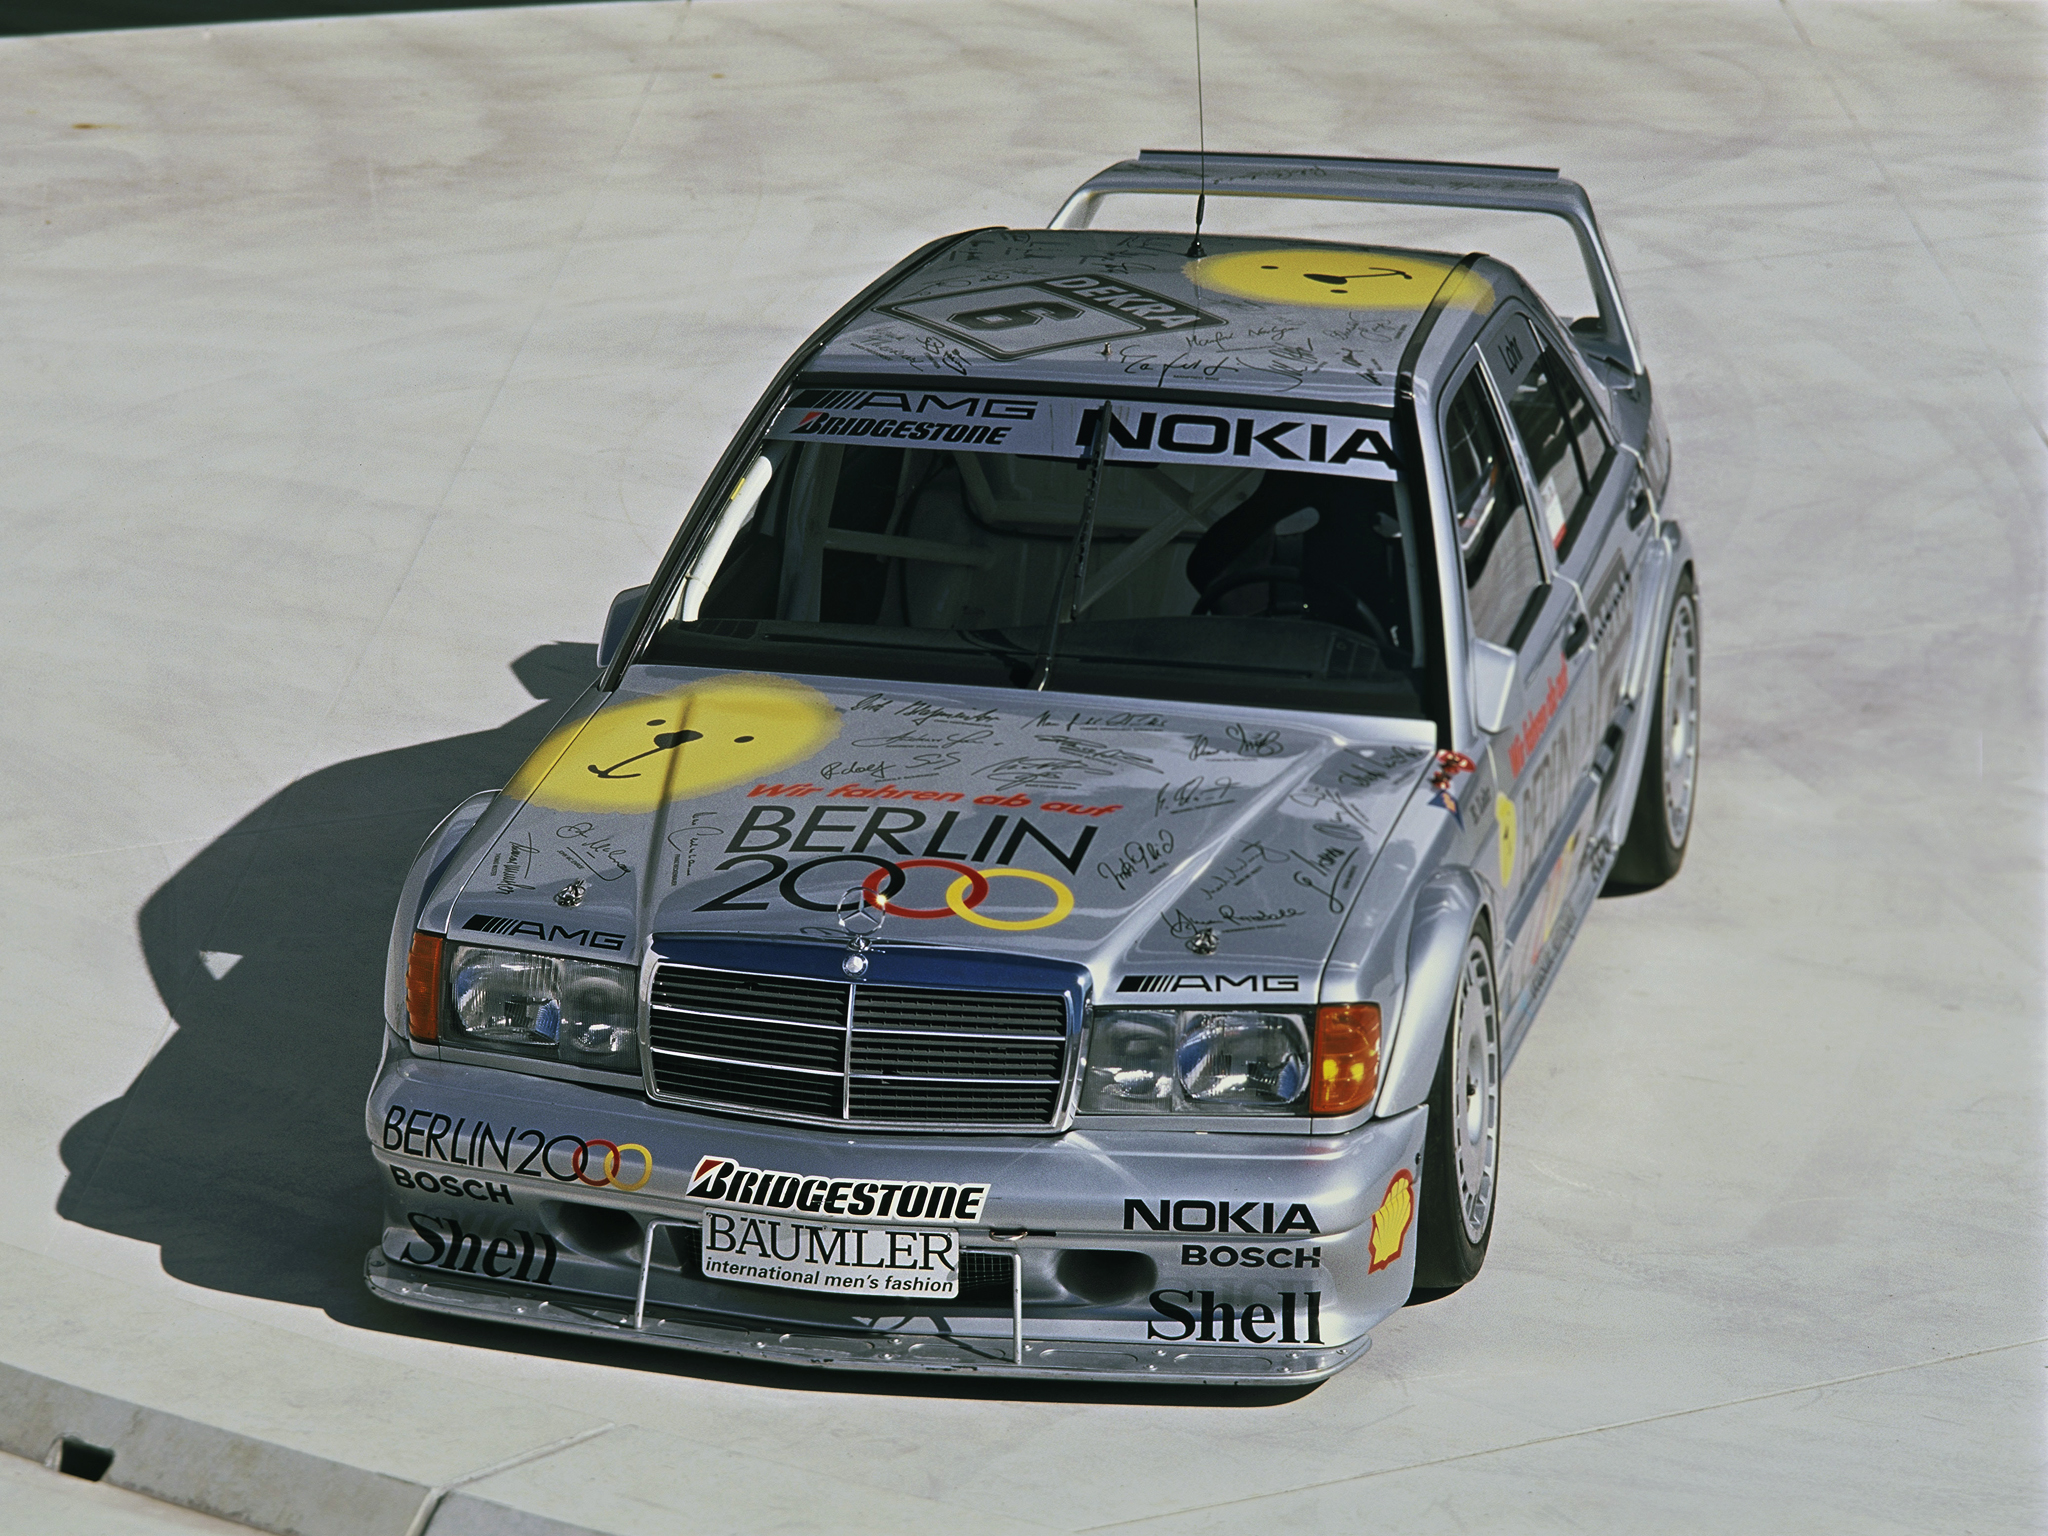 1993, Mercedes, Benz, Amg, 190, Evolution, I i, Dtm, W201, Race, Racing Wallpaper